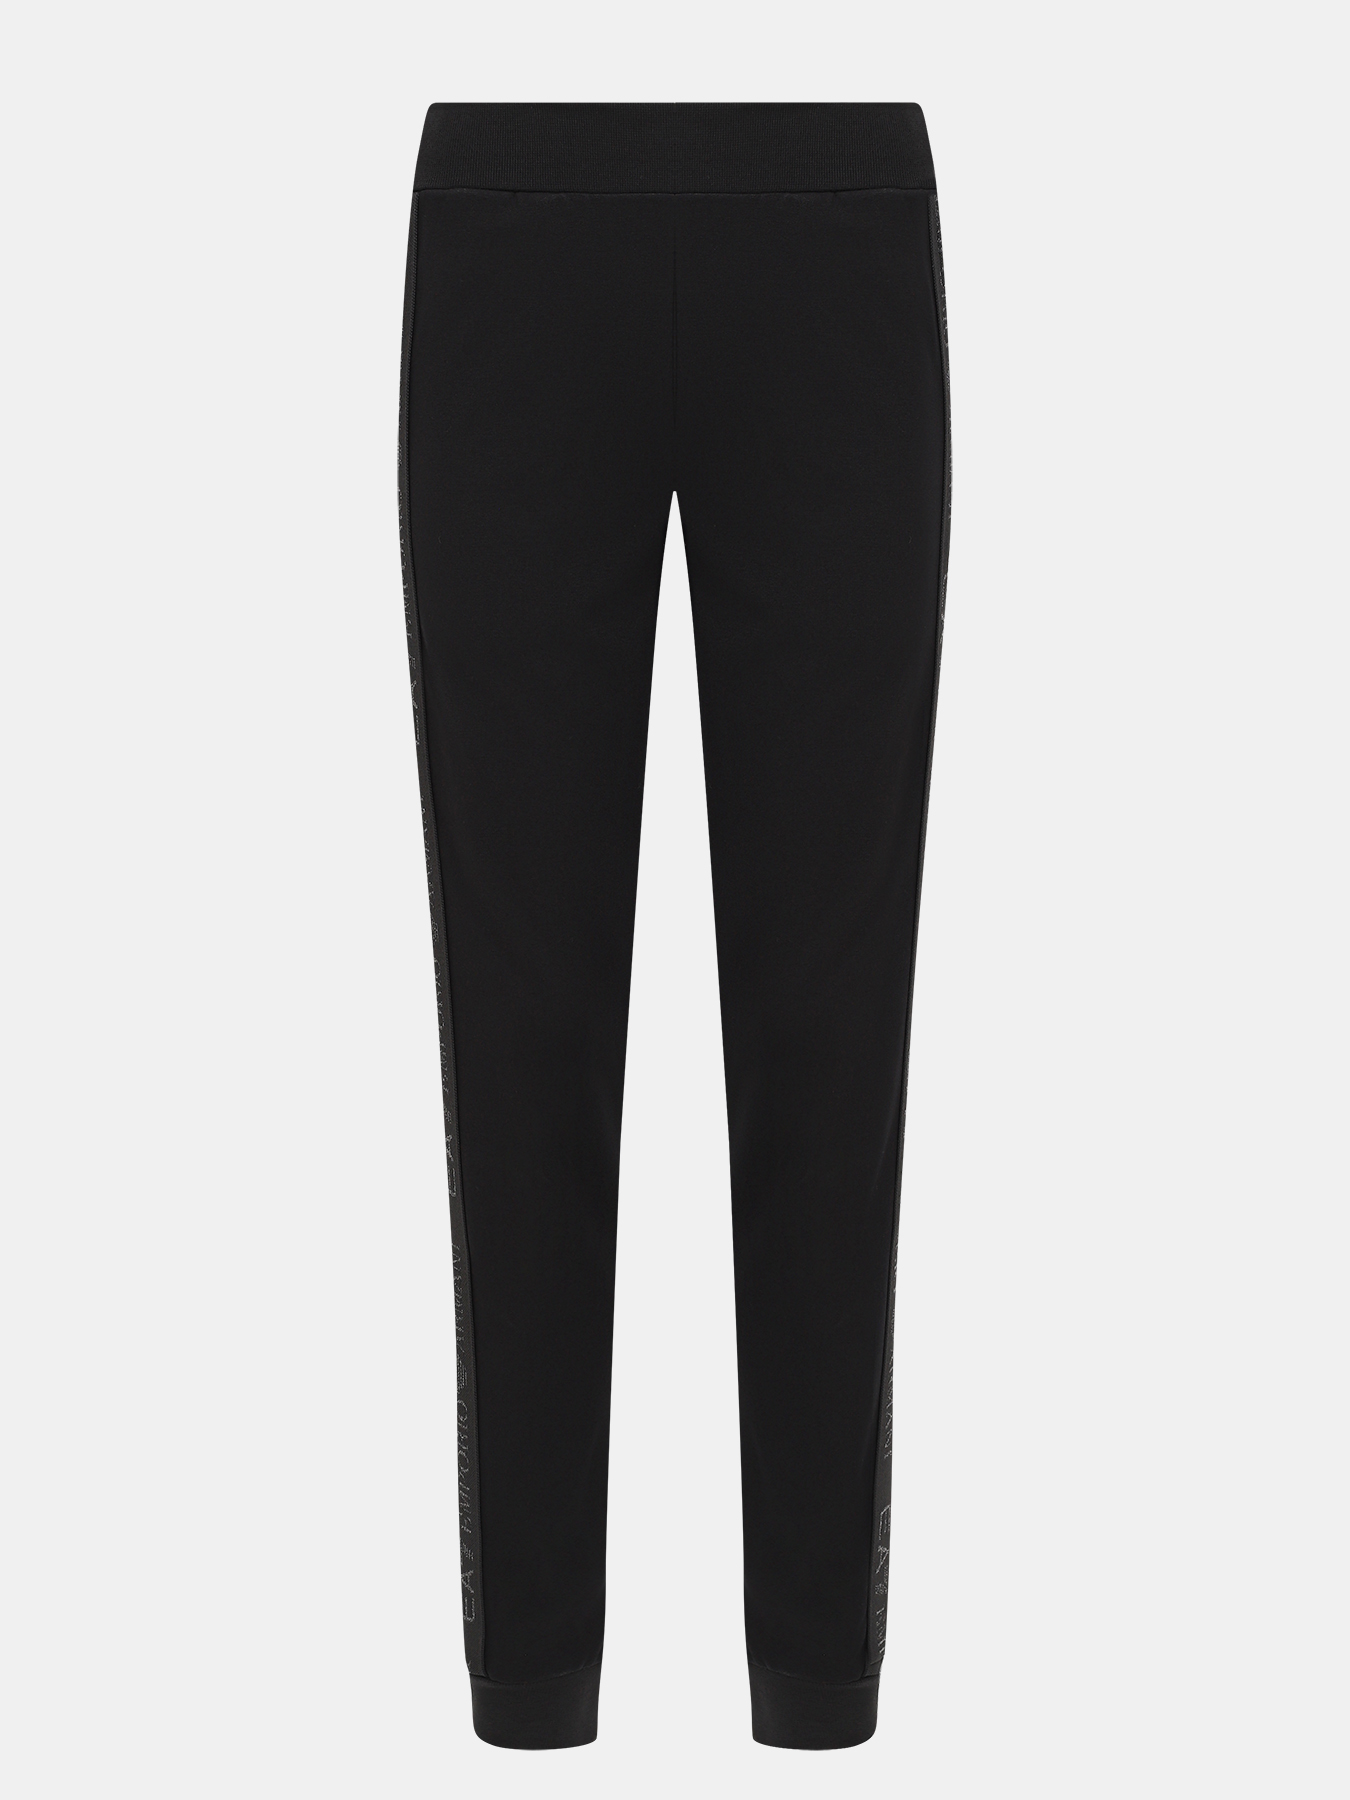 Спортивные брюки EA7 Emporio Armani 423031-042, цвет черный, размер 42-44 - фото 1